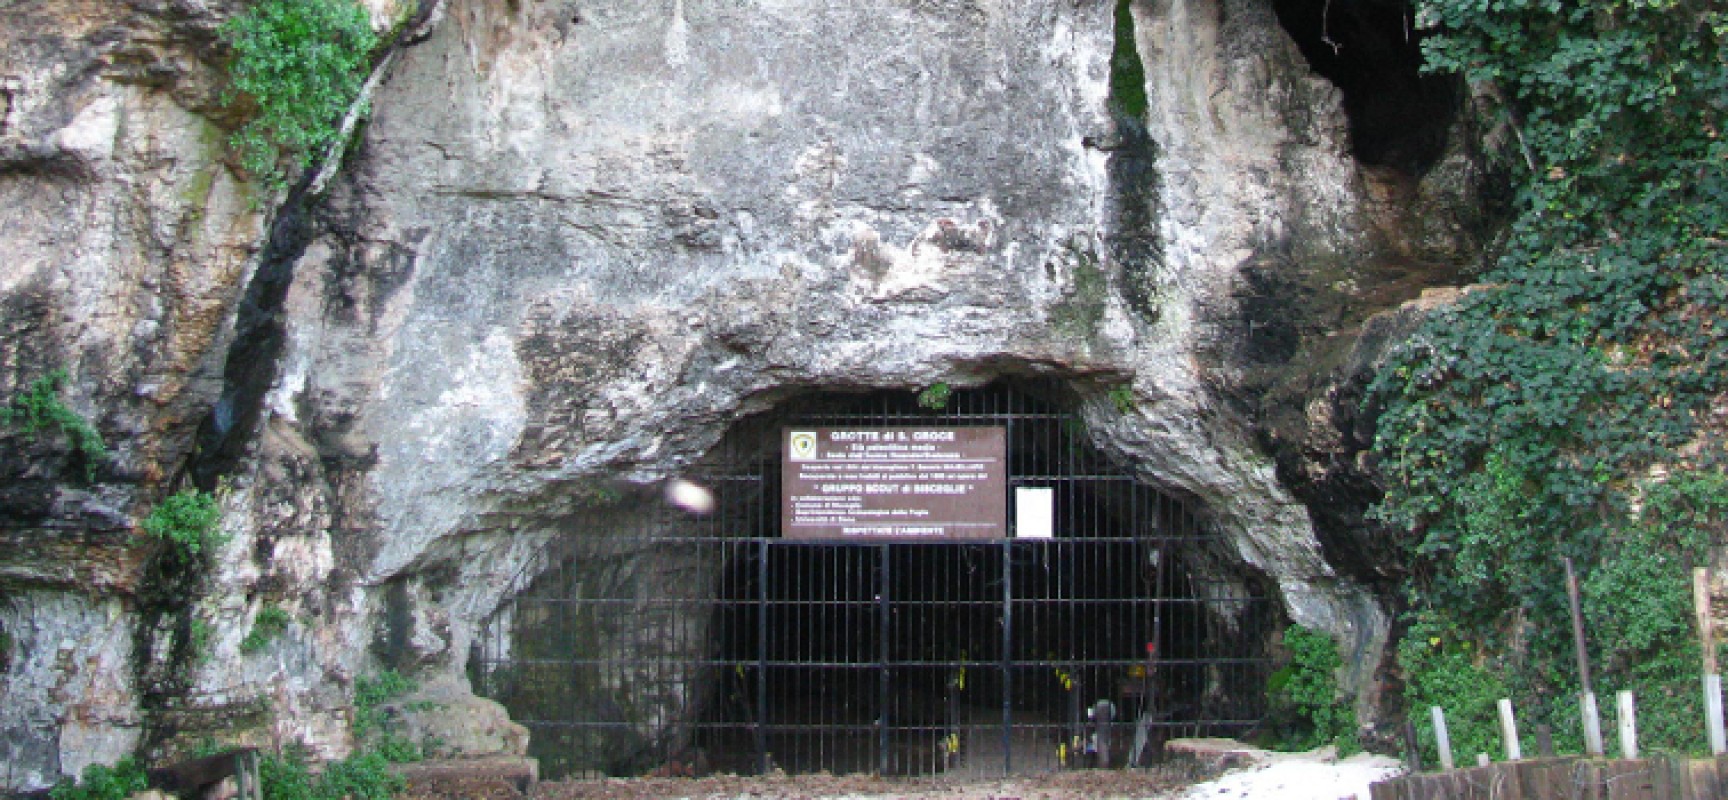 Le Grotte di Santa Croce tornano in festa per la sagra